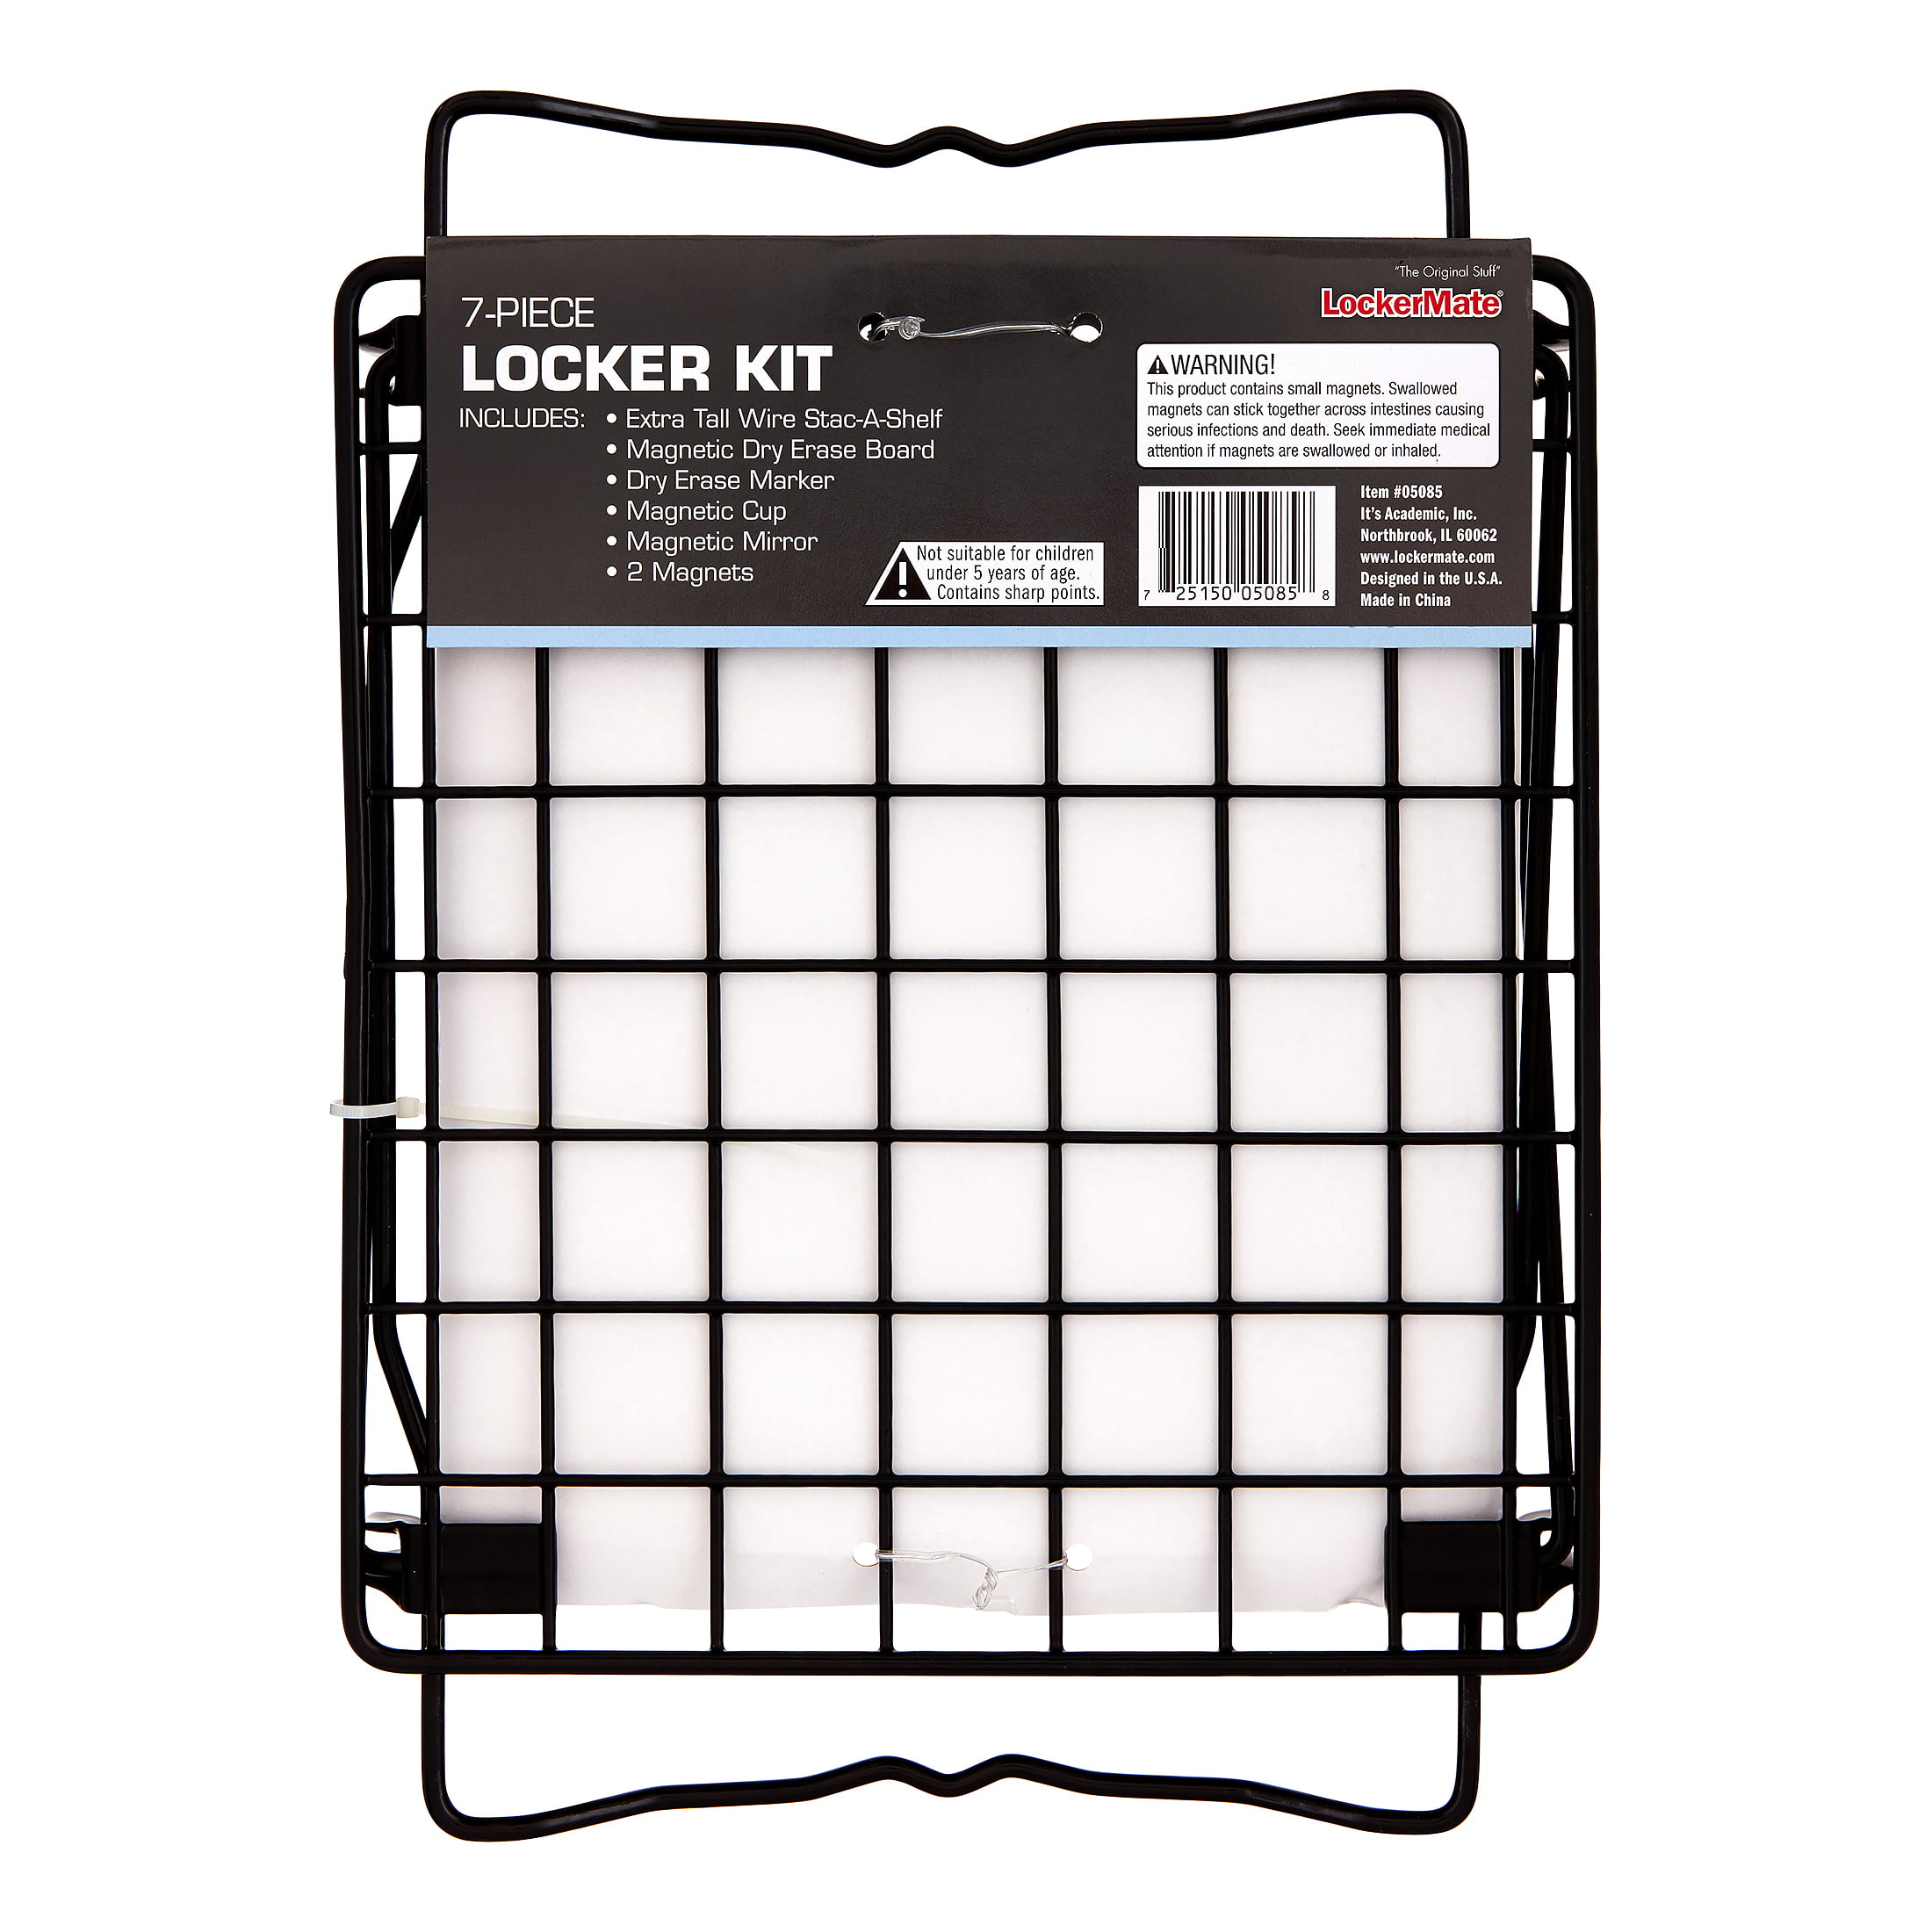 LockerMate 7-Piece Locker Organizer Kit Storage Cup & Dry Erase Marker Whiteboard Mirror Black Includes Locker Shelf 